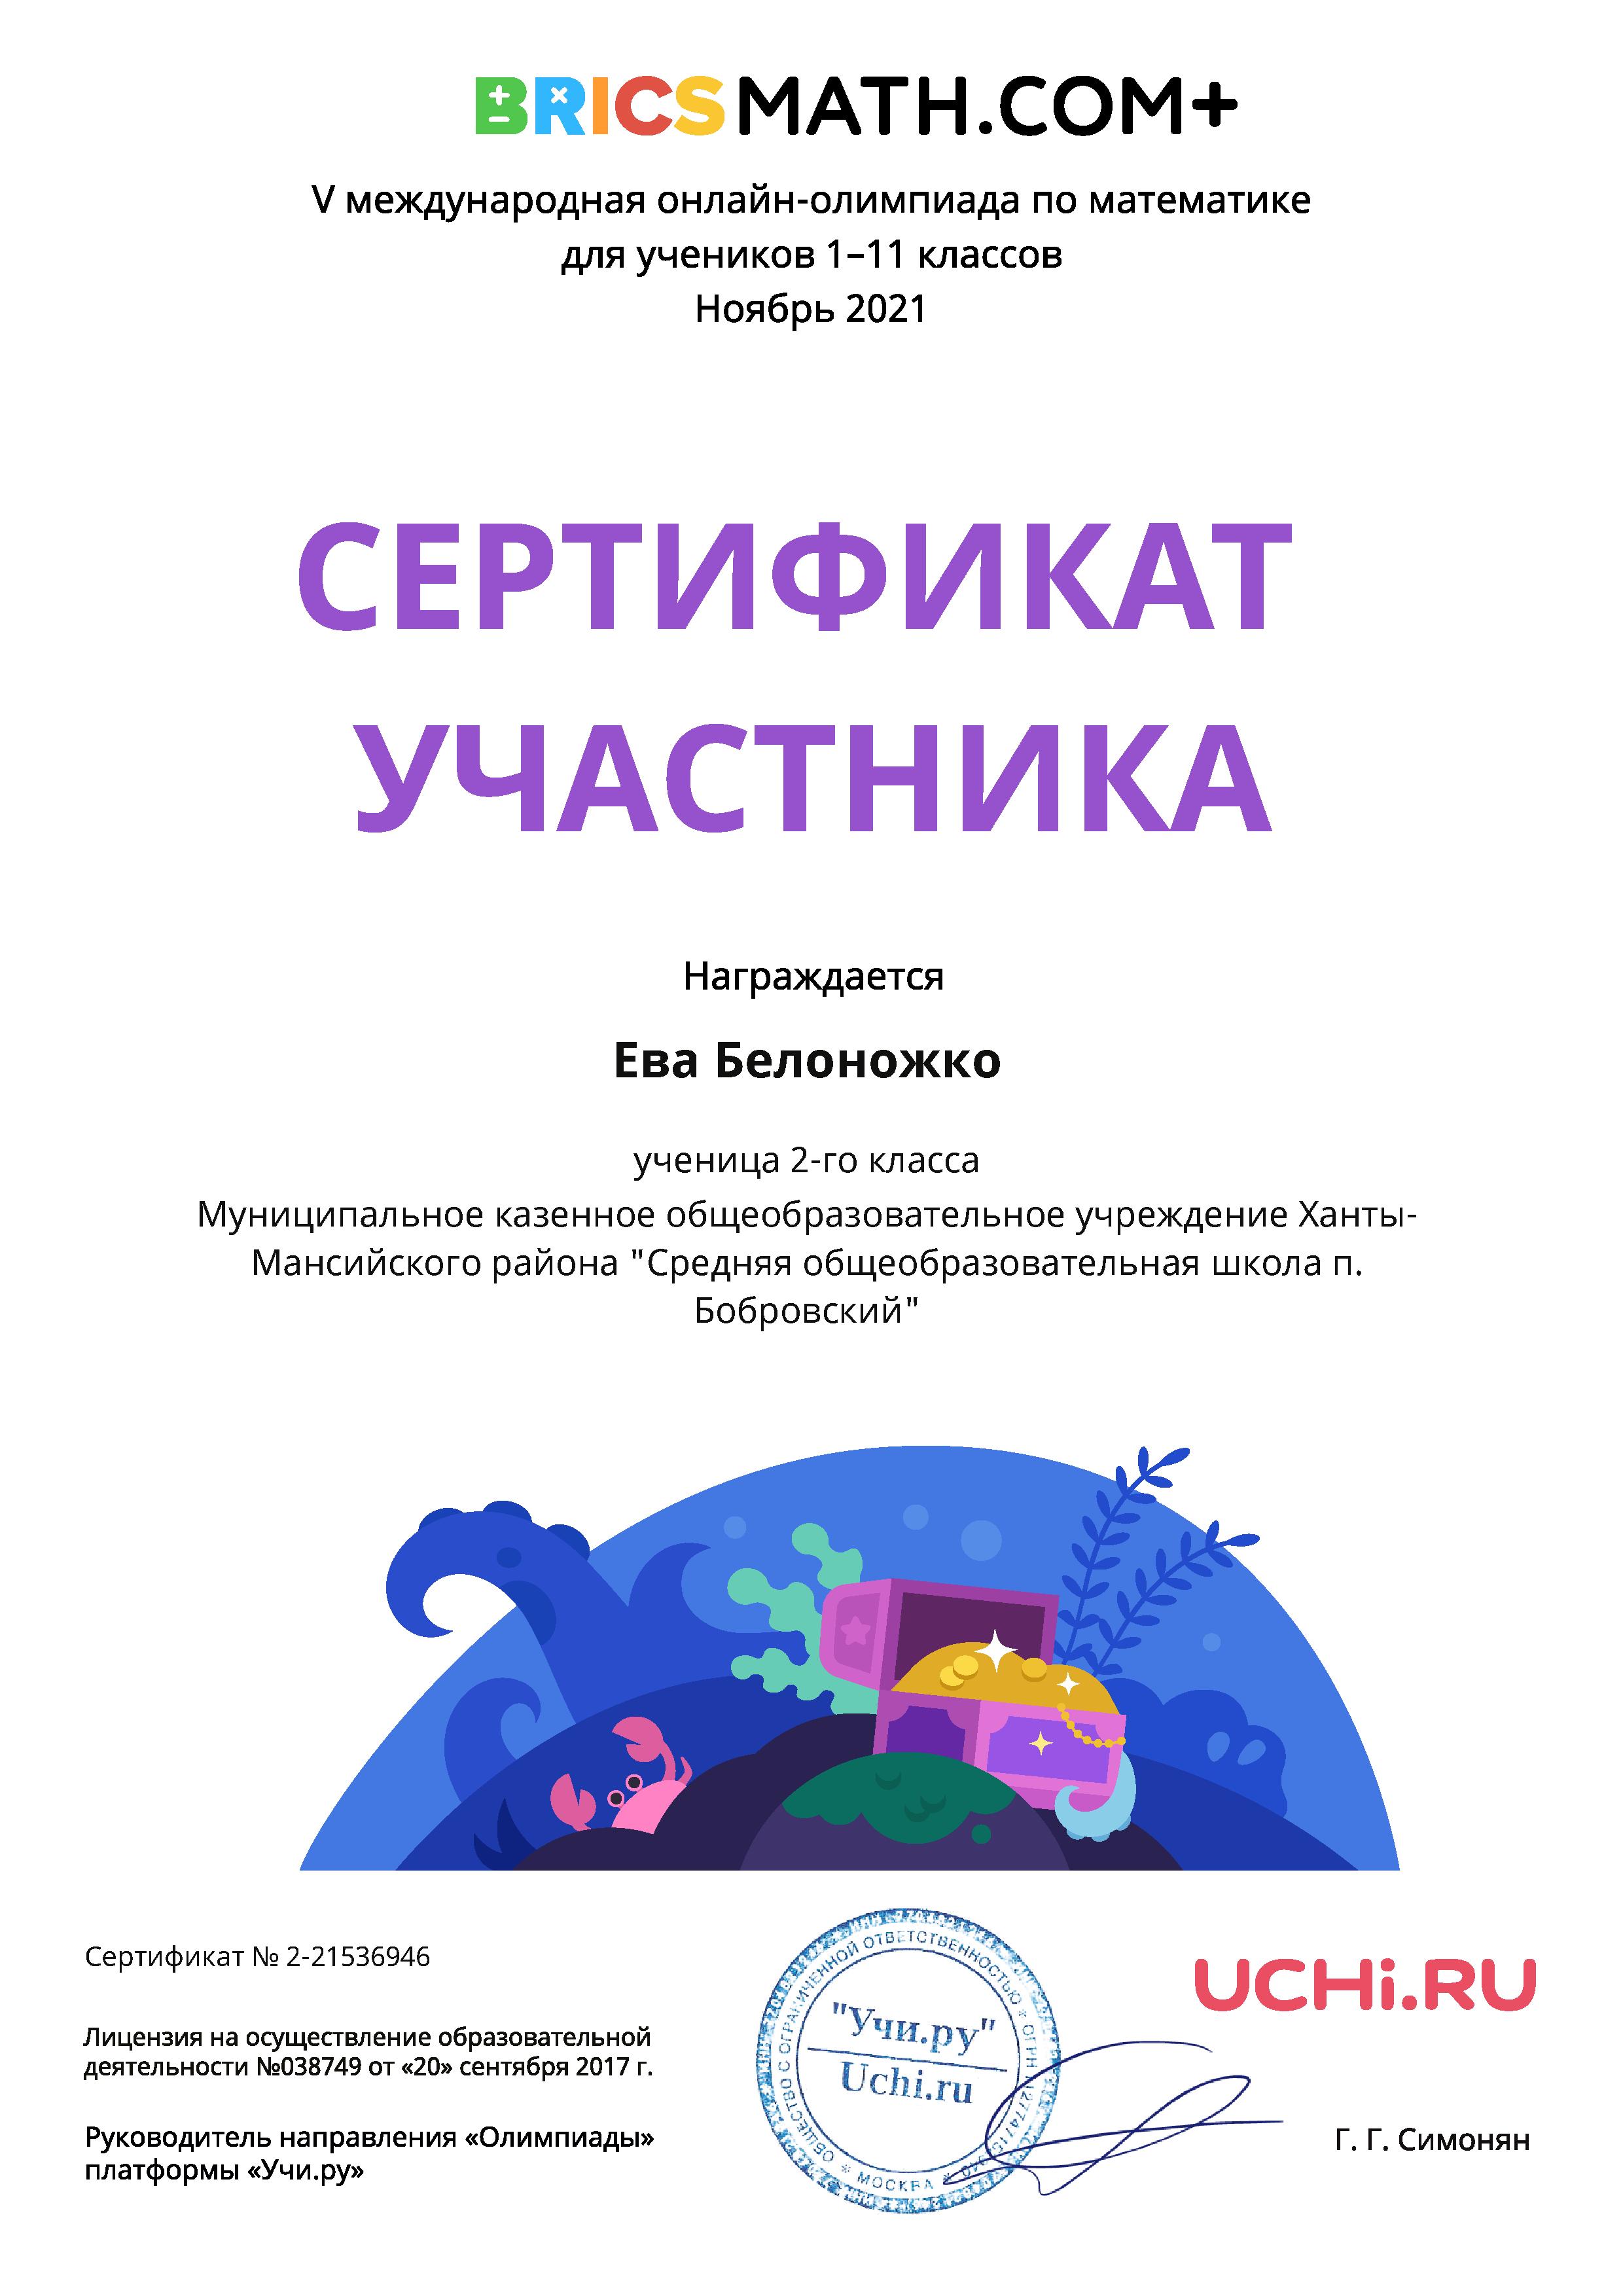 Белоножко Е. Сертификат участника. V международная онлайн-олимпиада BRICS.MATH.COM+. 2021